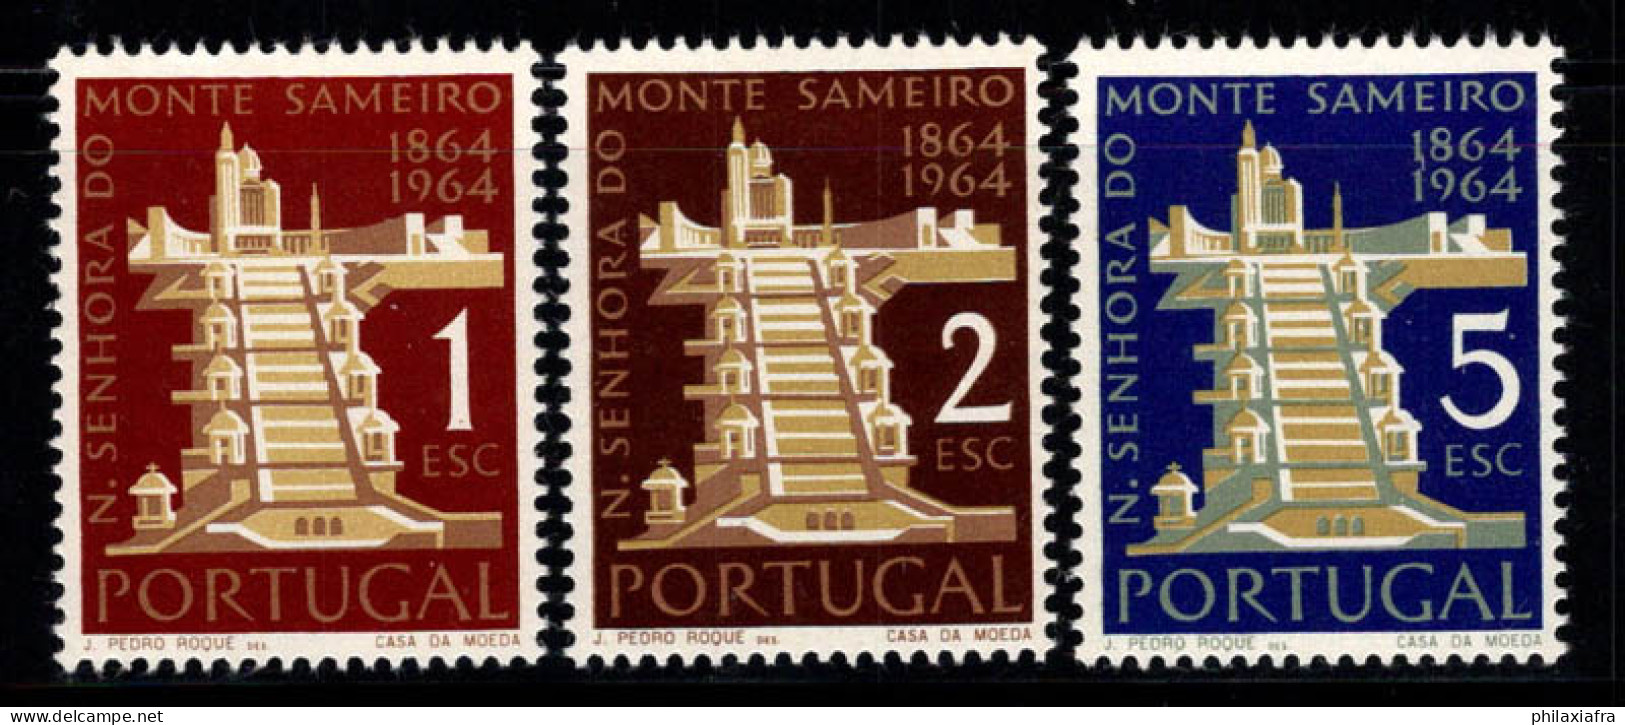 Portugal 1964 Mi. 960-962 Neuf ** 100% Sameiro, 1 E, 2 E, 5 E, Portugal - Neufs